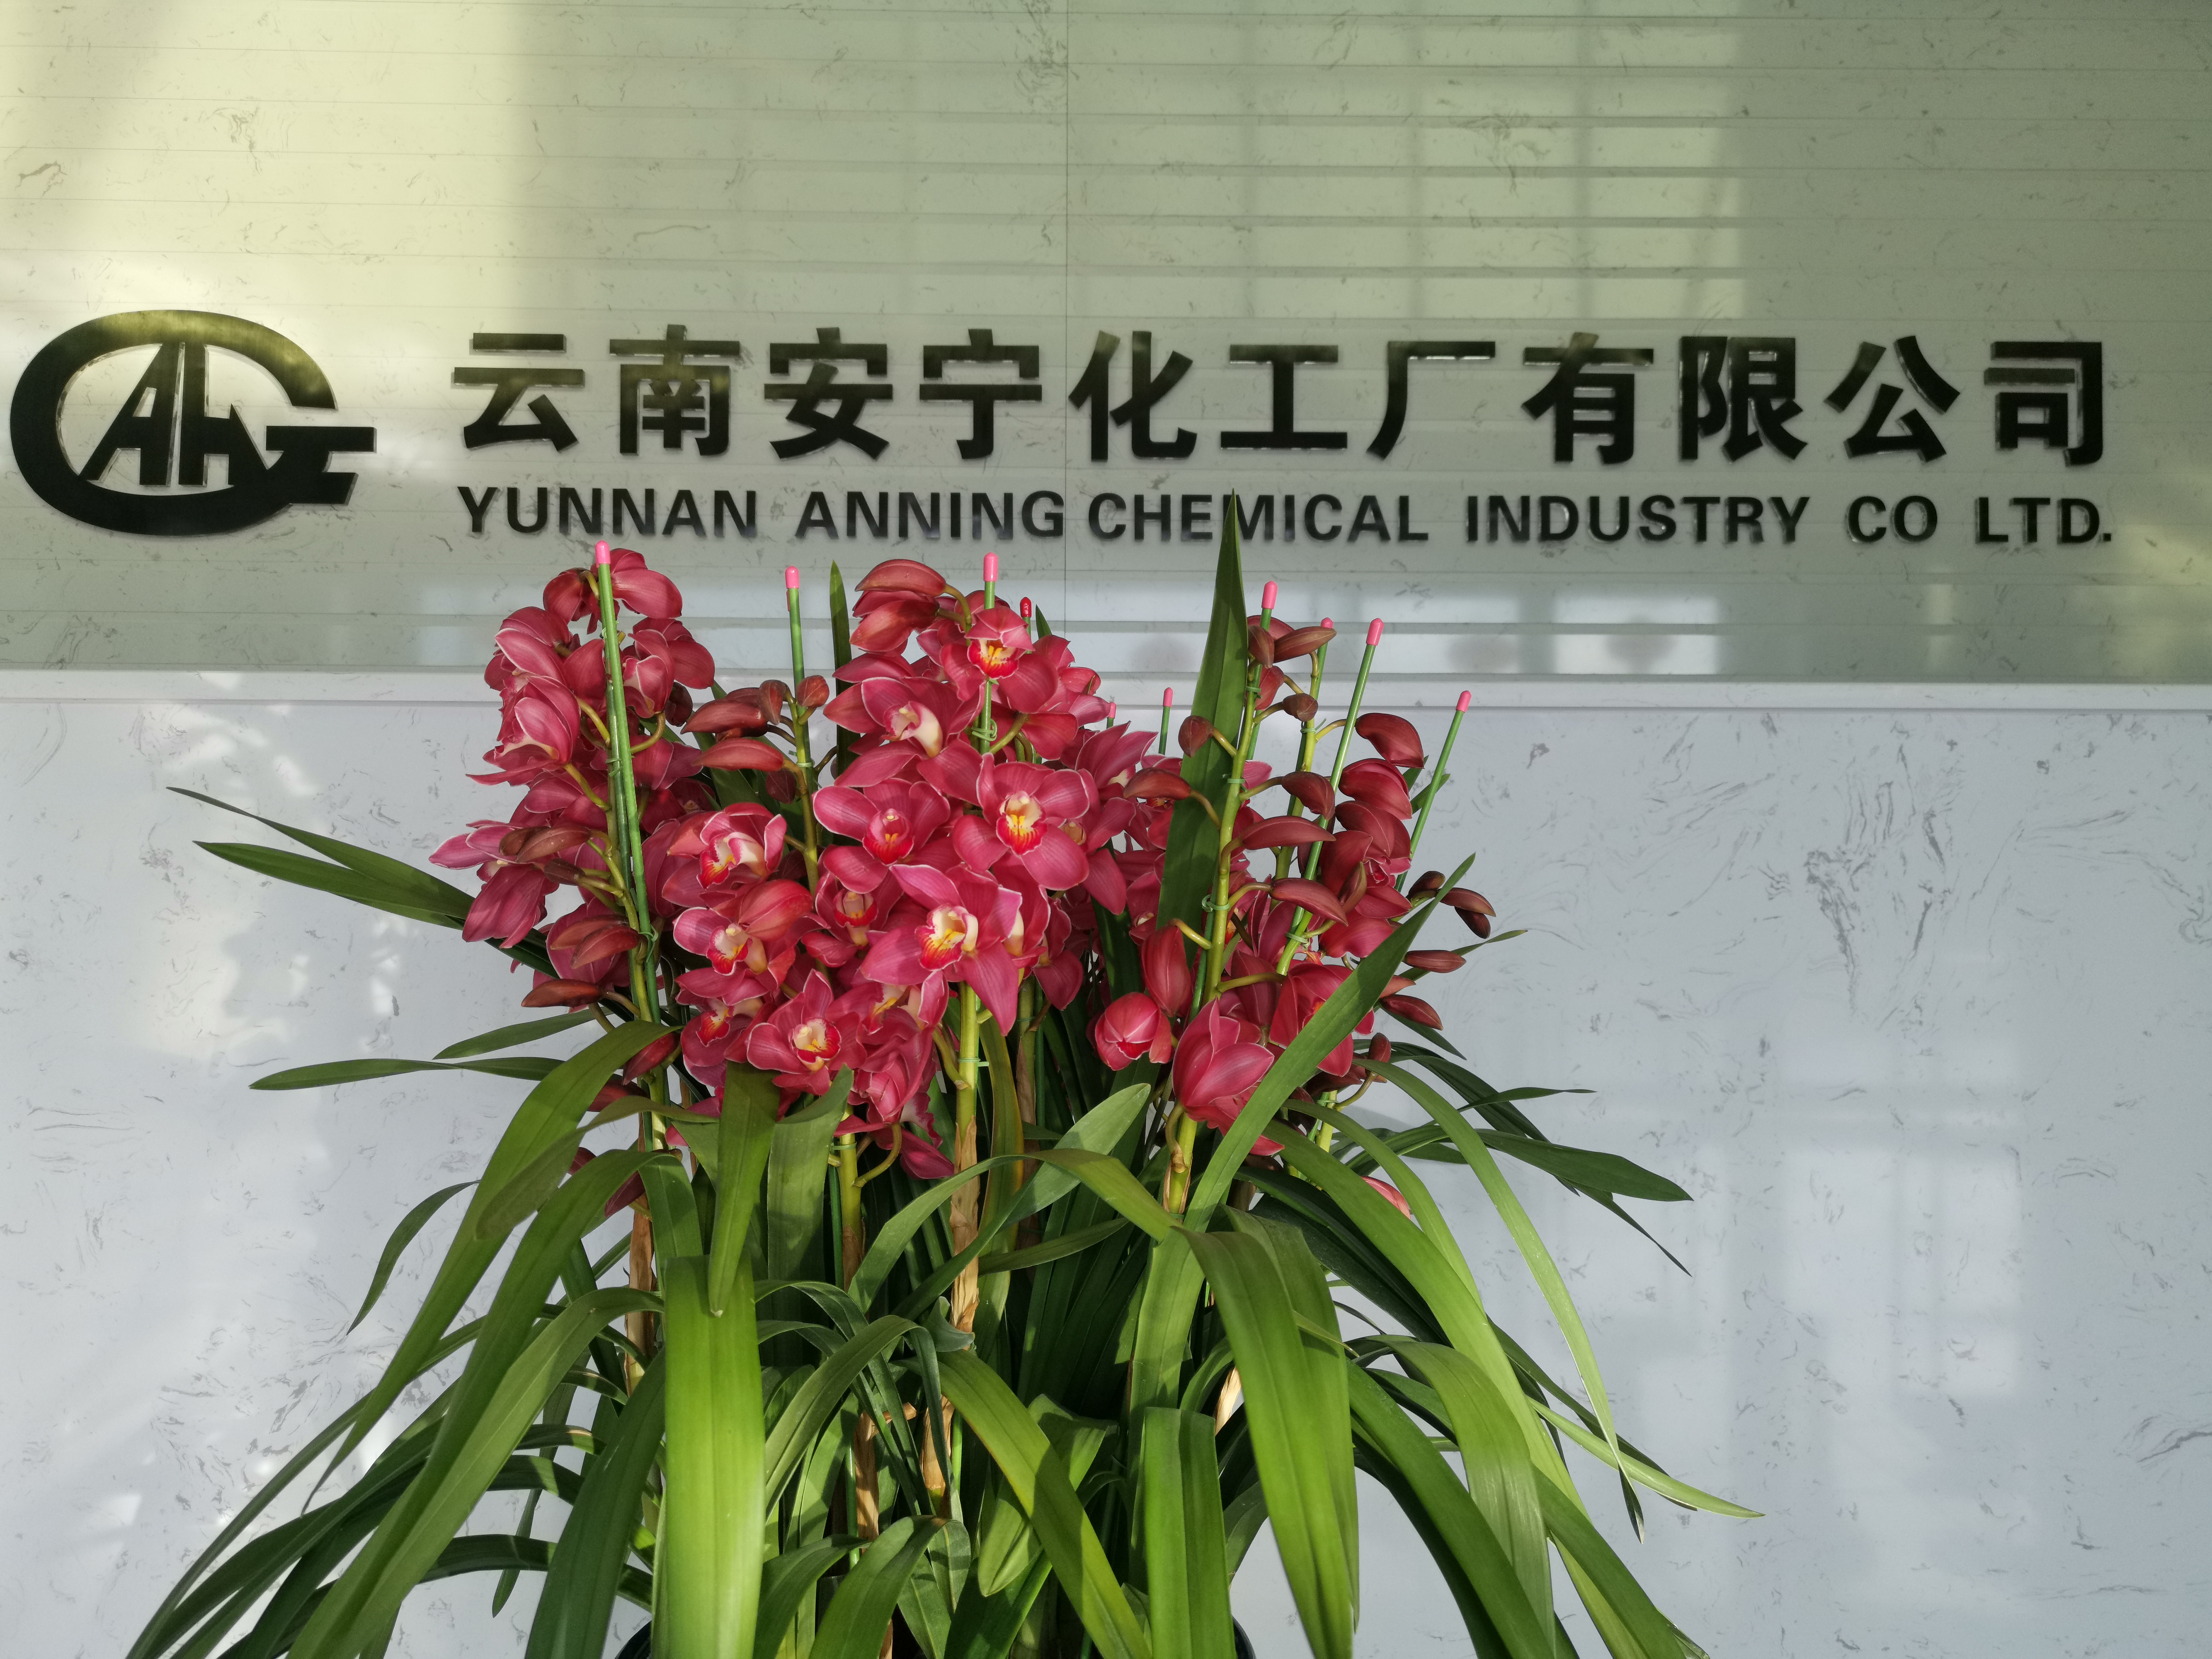 關于對 2020 年云南安寧化工廠有限公司擬聘用人員進行公示的公告